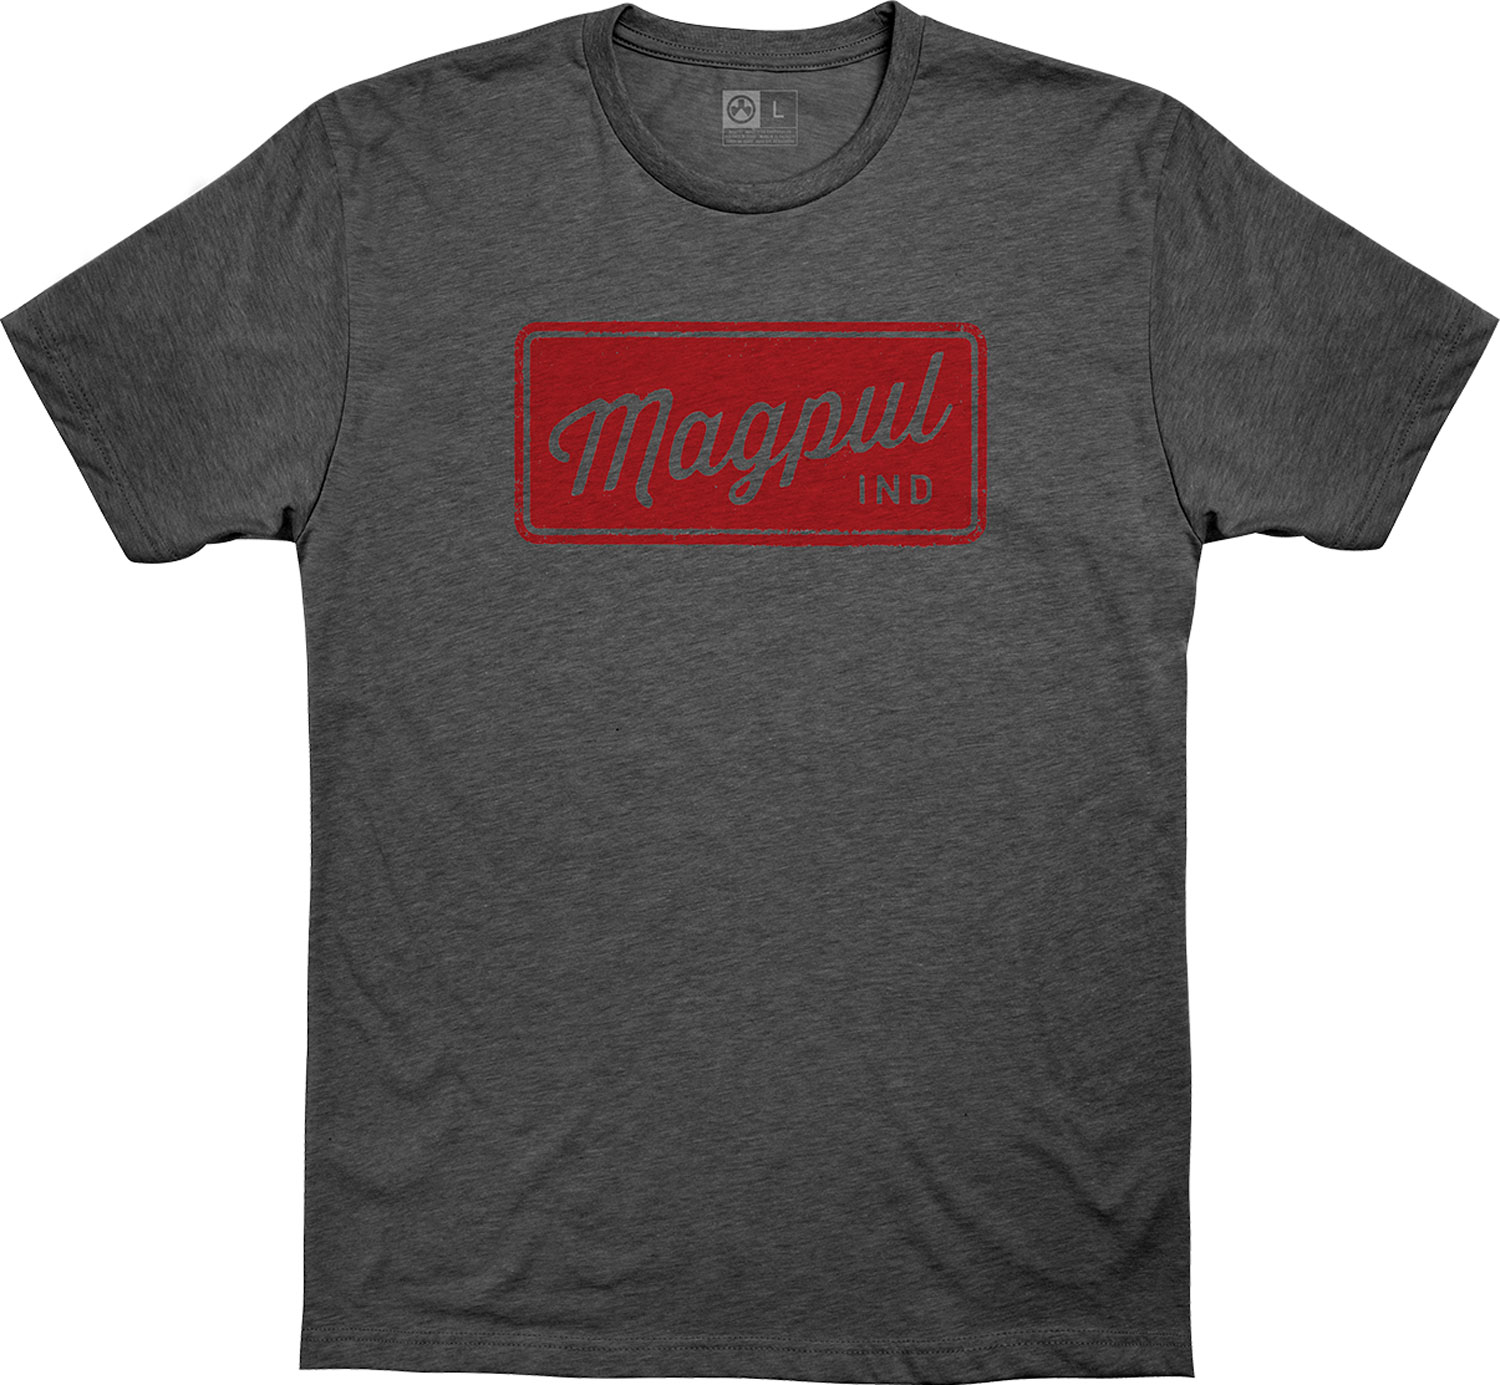 Magpul MAG1116-011-M Rover Block T-Shirts Charcoal Gray Medium Short Sleeve